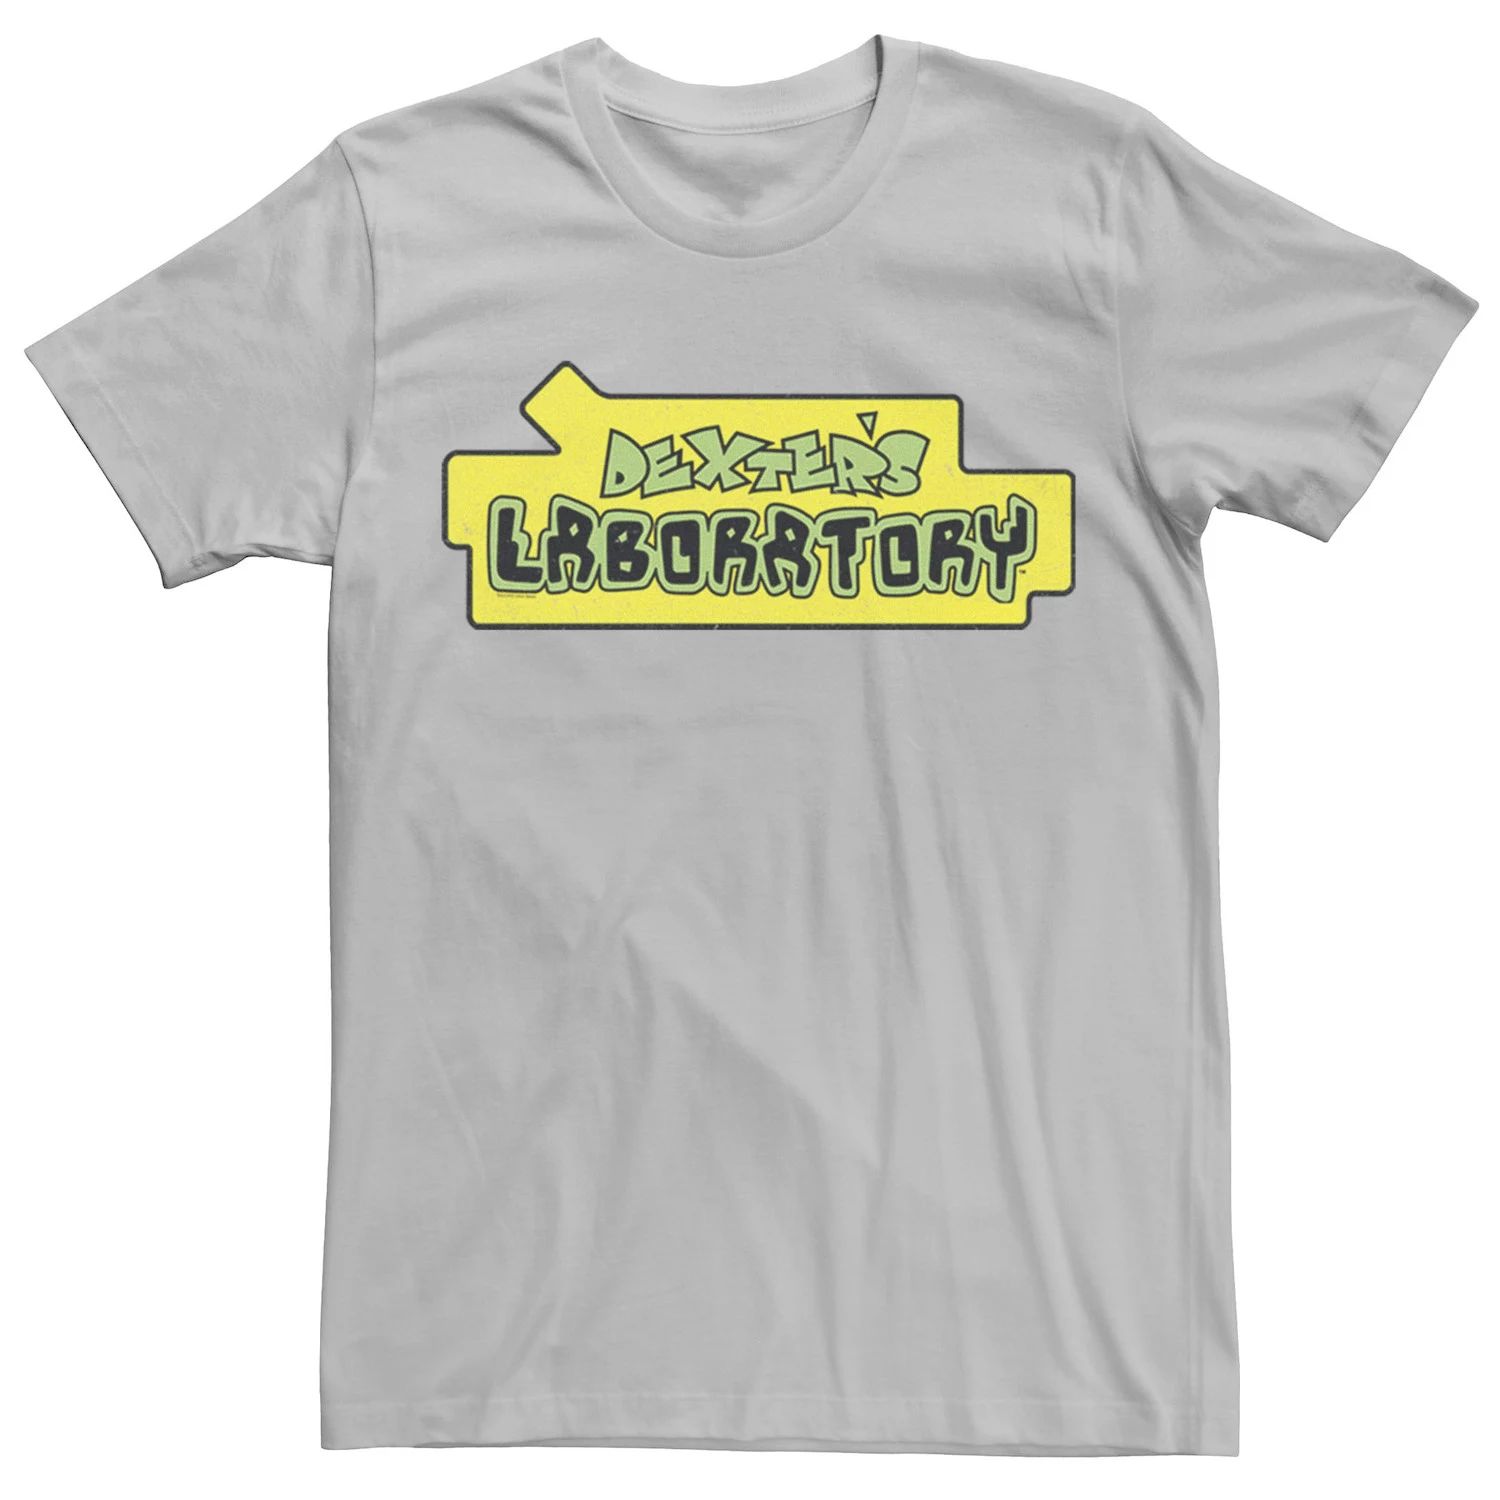 Мужская футболка с официальным логотипом Лаборатории Декстера Licensed Character, серебристый